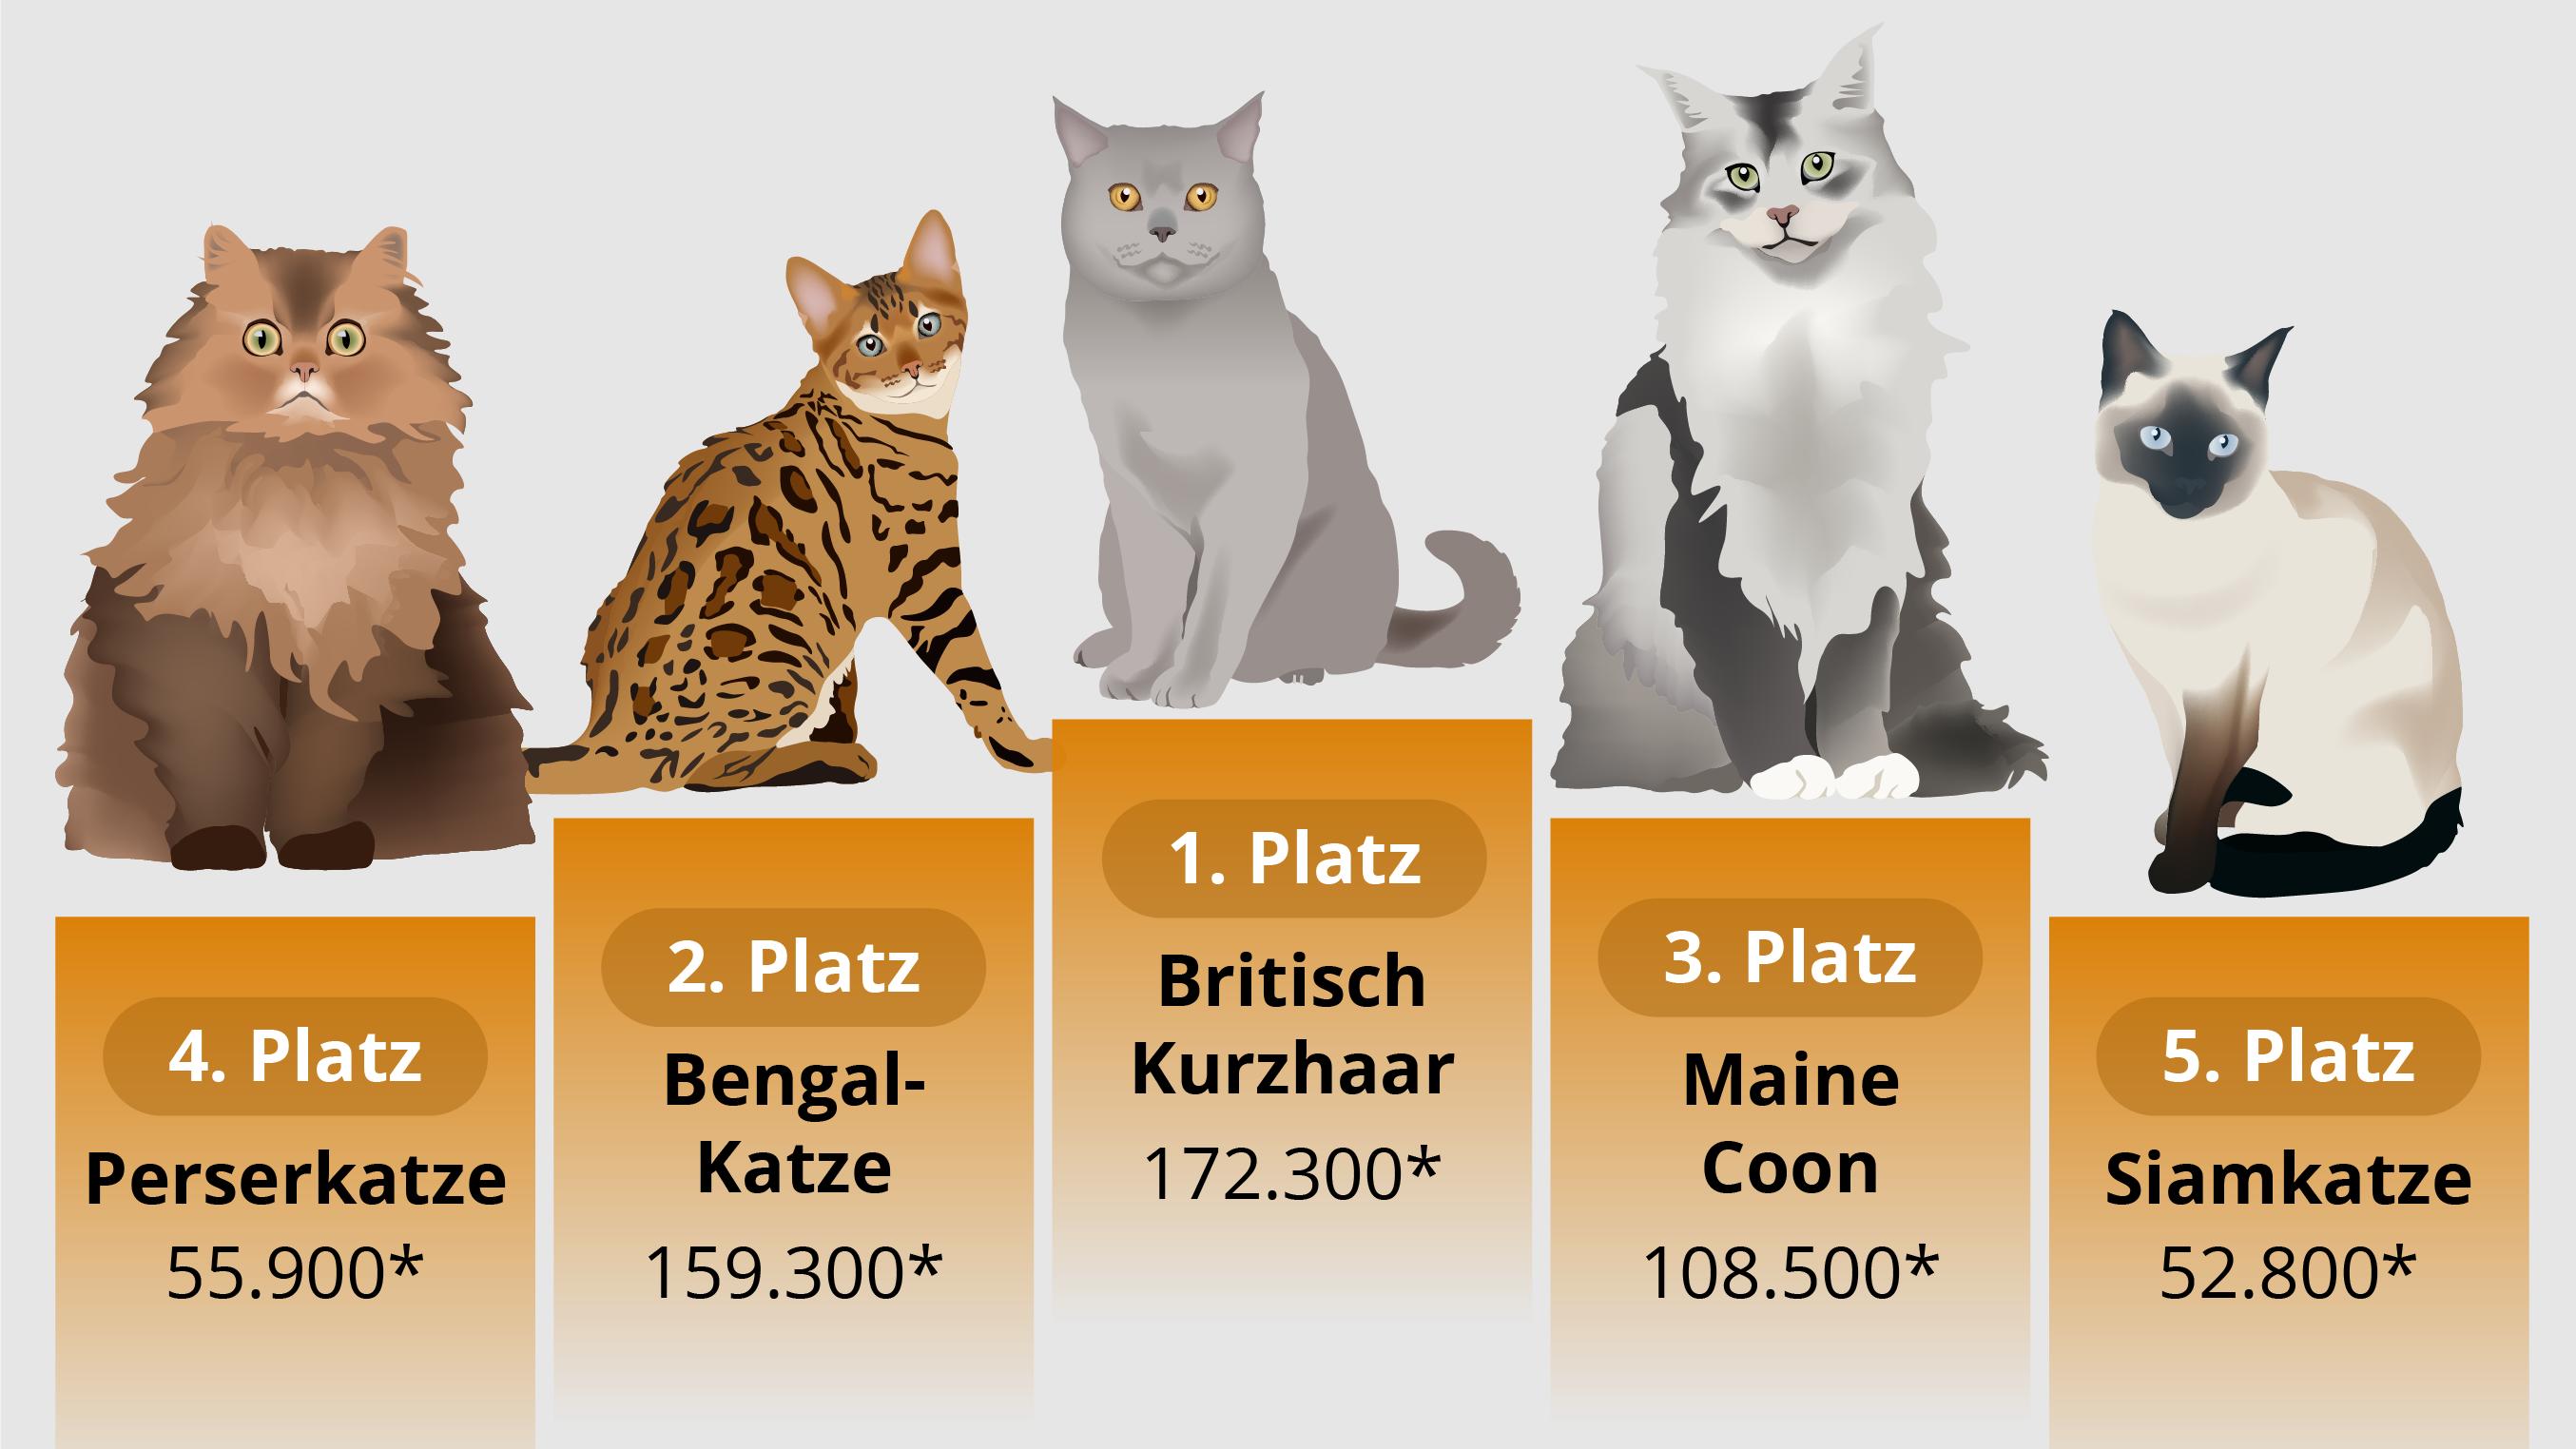 Das sind die beliebtesten Katzenrassen im Netz